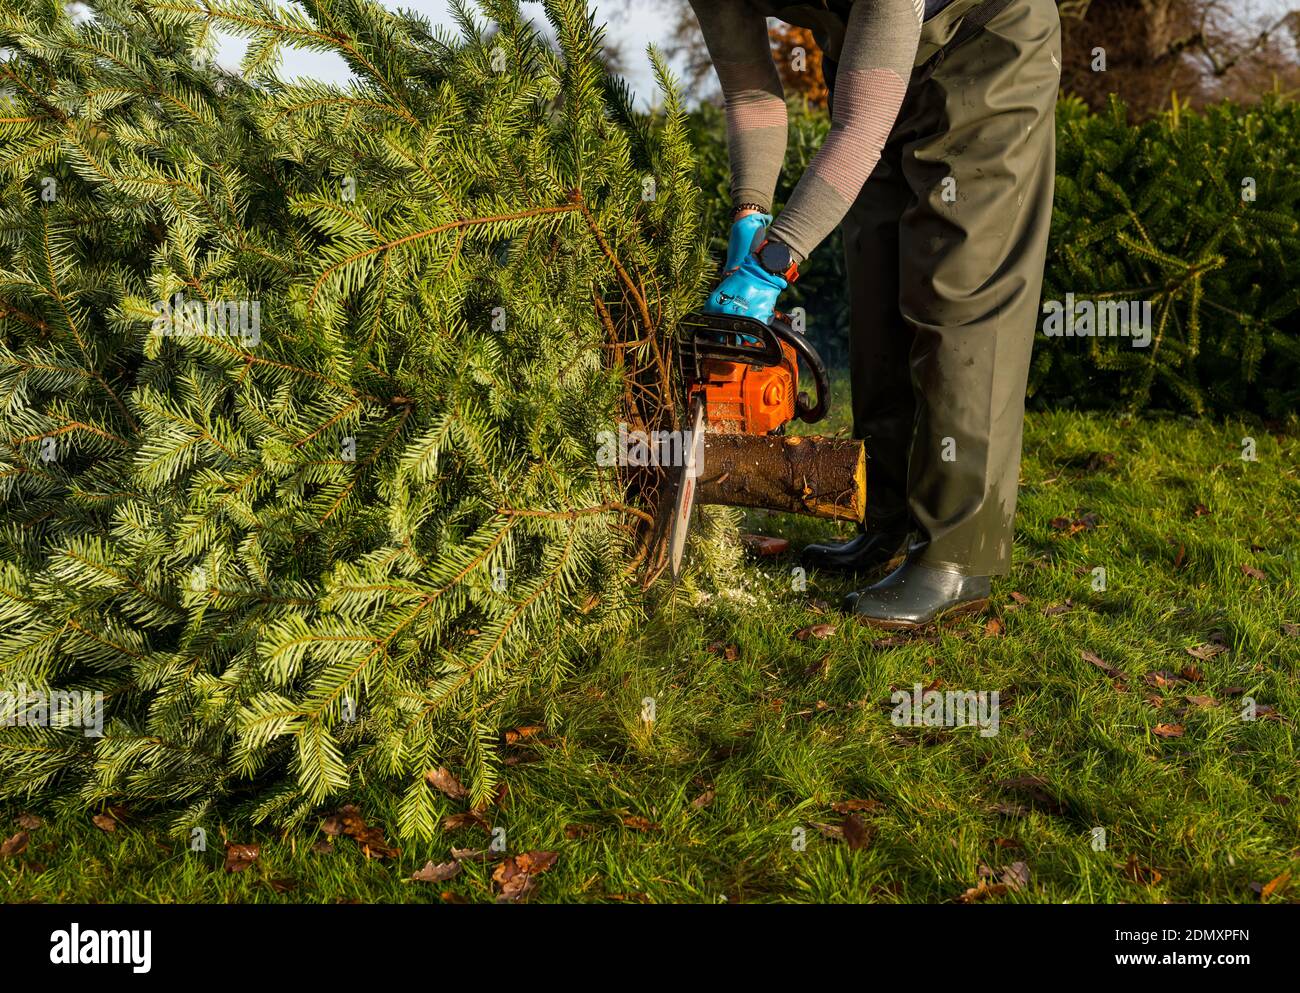 Couper un tronc d'arbre de Noël avec une tronçonneuse, Beanston Farm, East Lothian, écosse, Royaume-Uni Banque D'Images